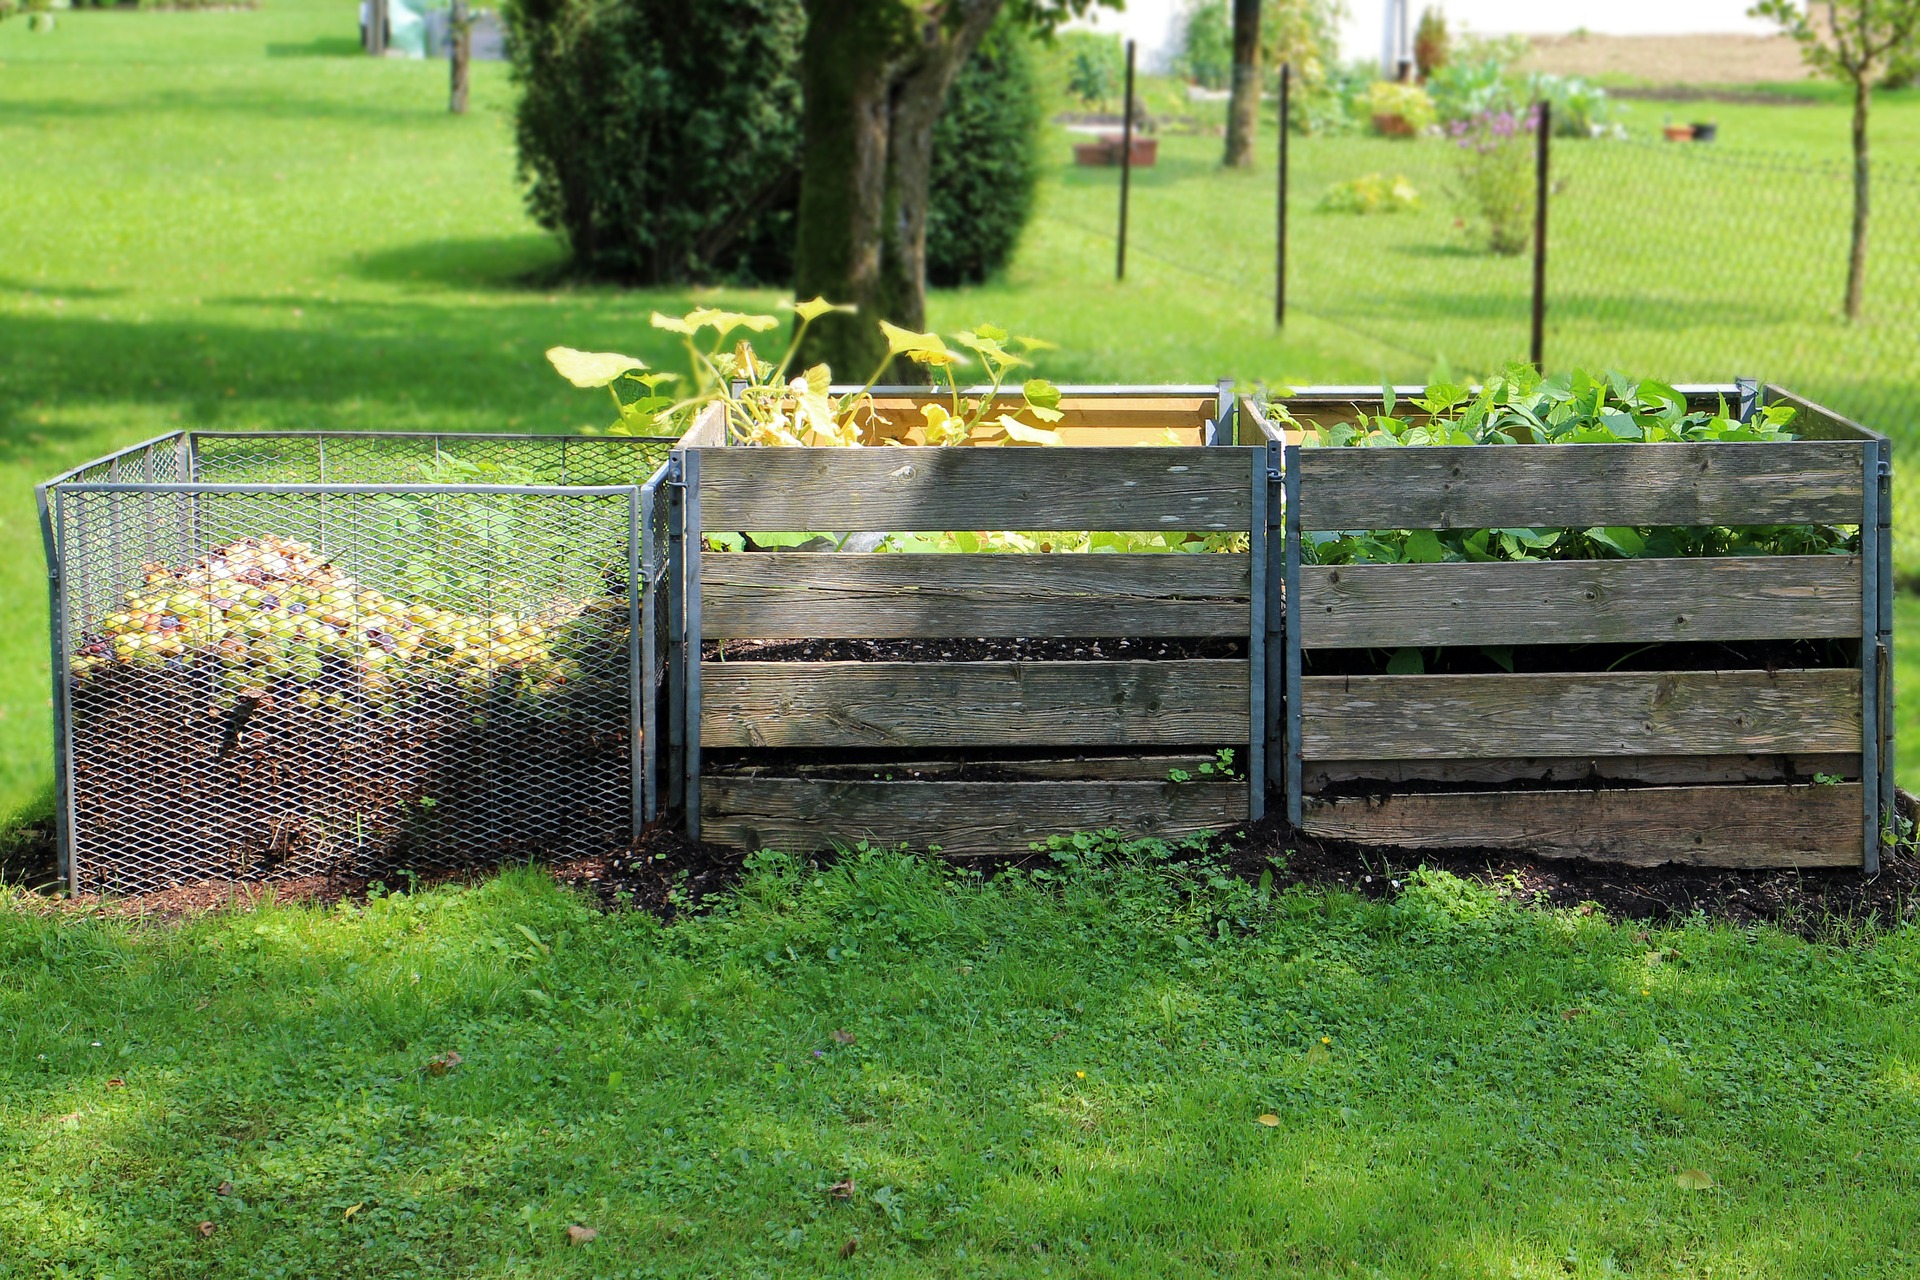 Profesionálové používají hned 3 kompostéry vedle sebe.